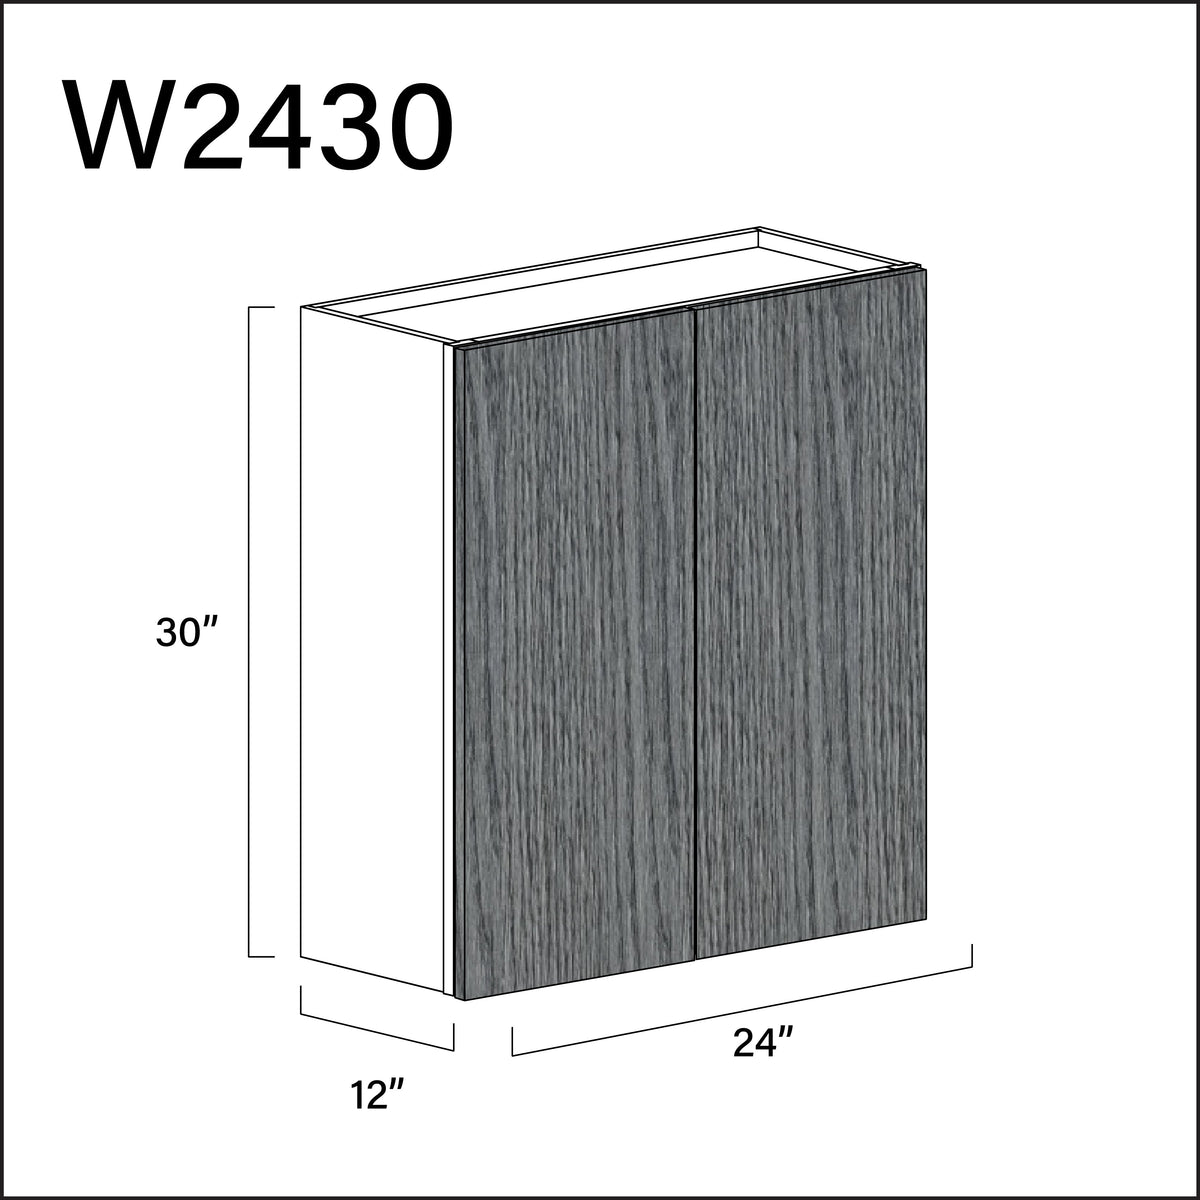 Textured Gray Frameless Double Door Wall Cabinet - 24" W x 30" H x 12" D